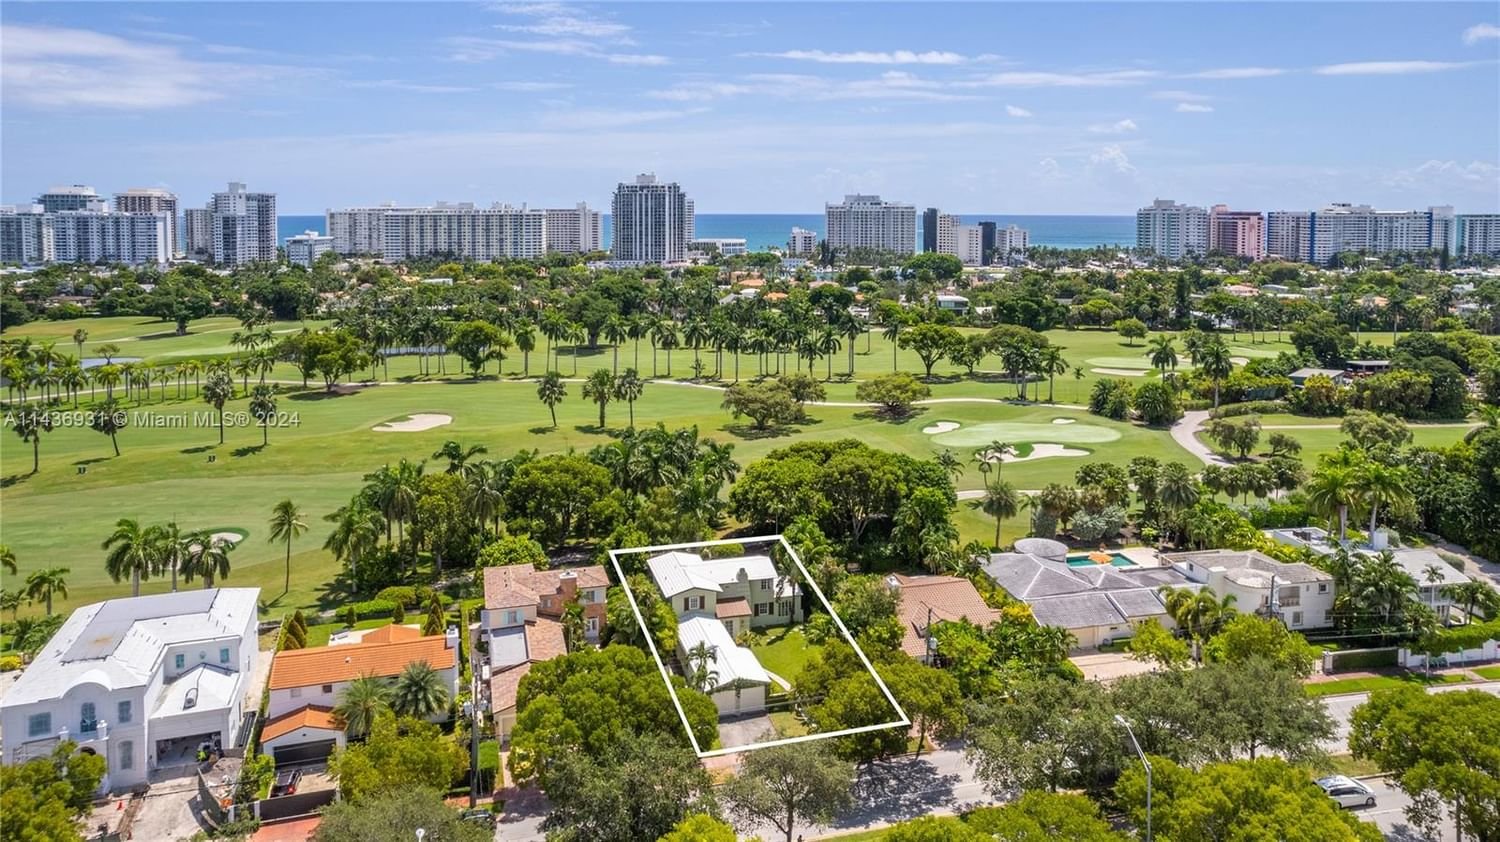 Real estate property located at 5431 Alton Rd, Miami-Dade County, Miami Beach, FL